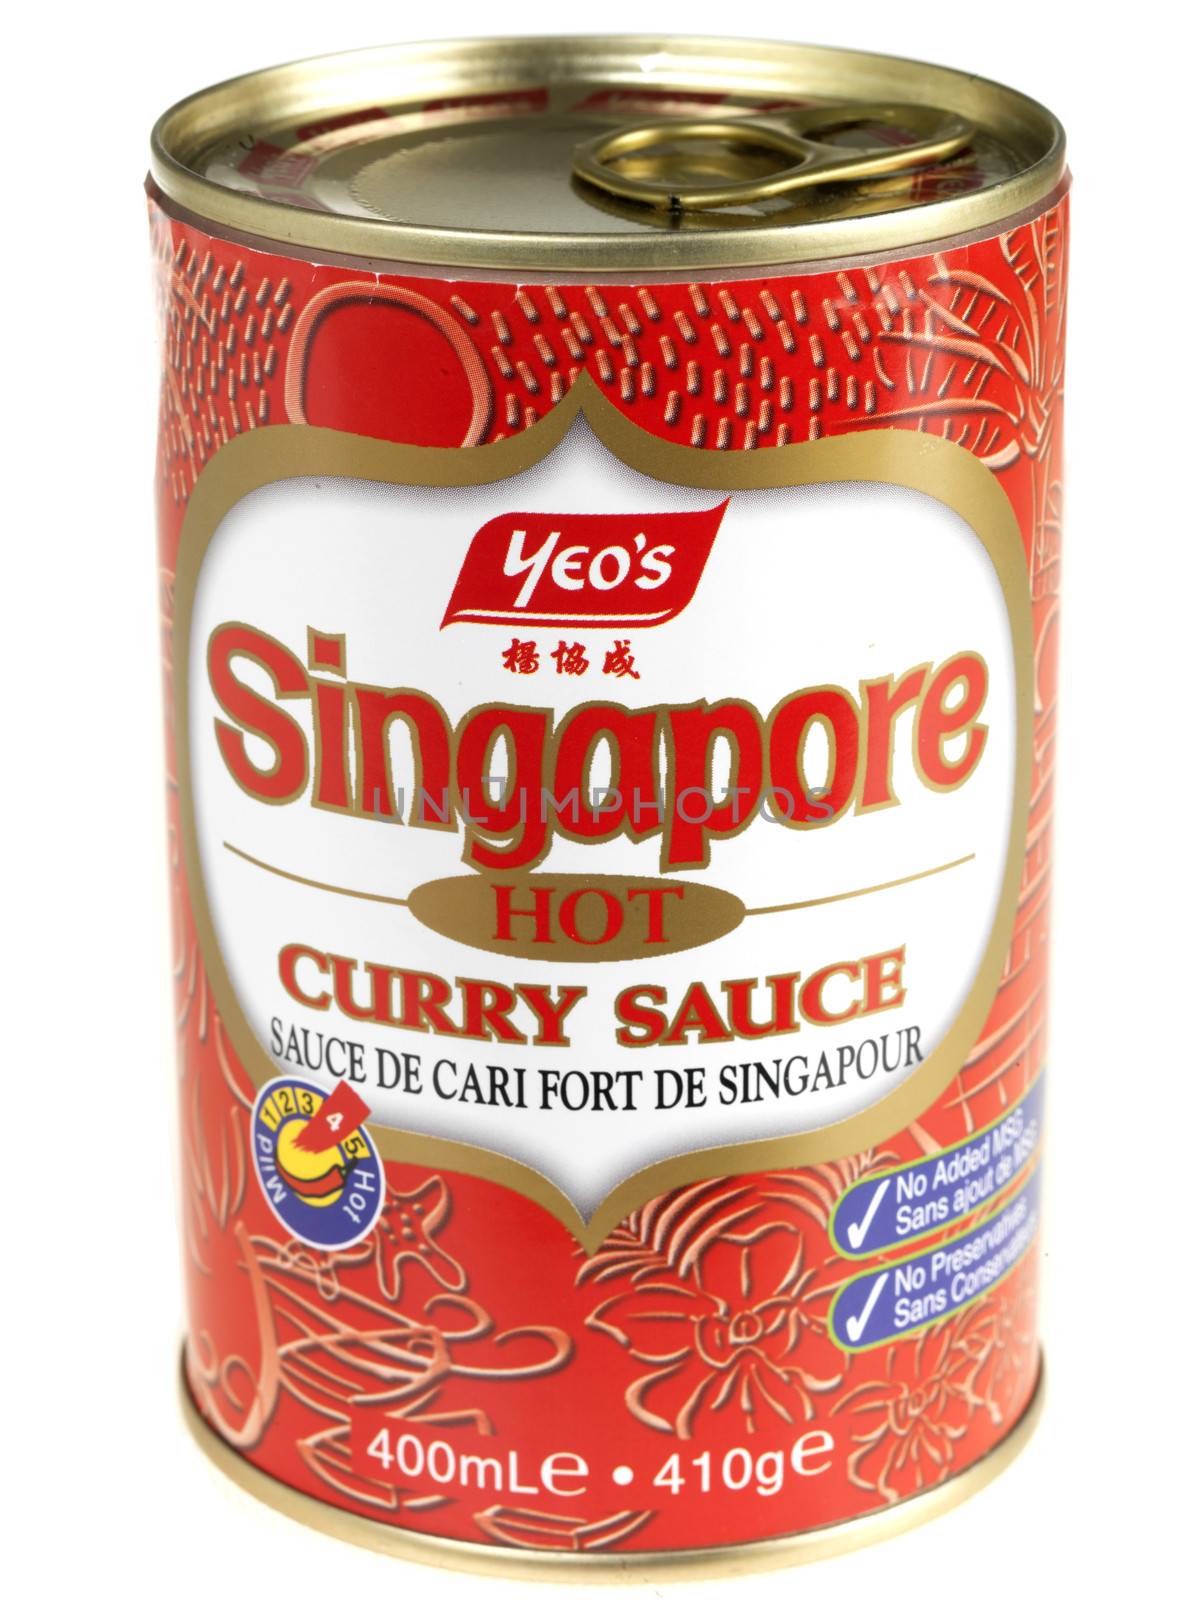 Tin of Singapore Curry Sauce